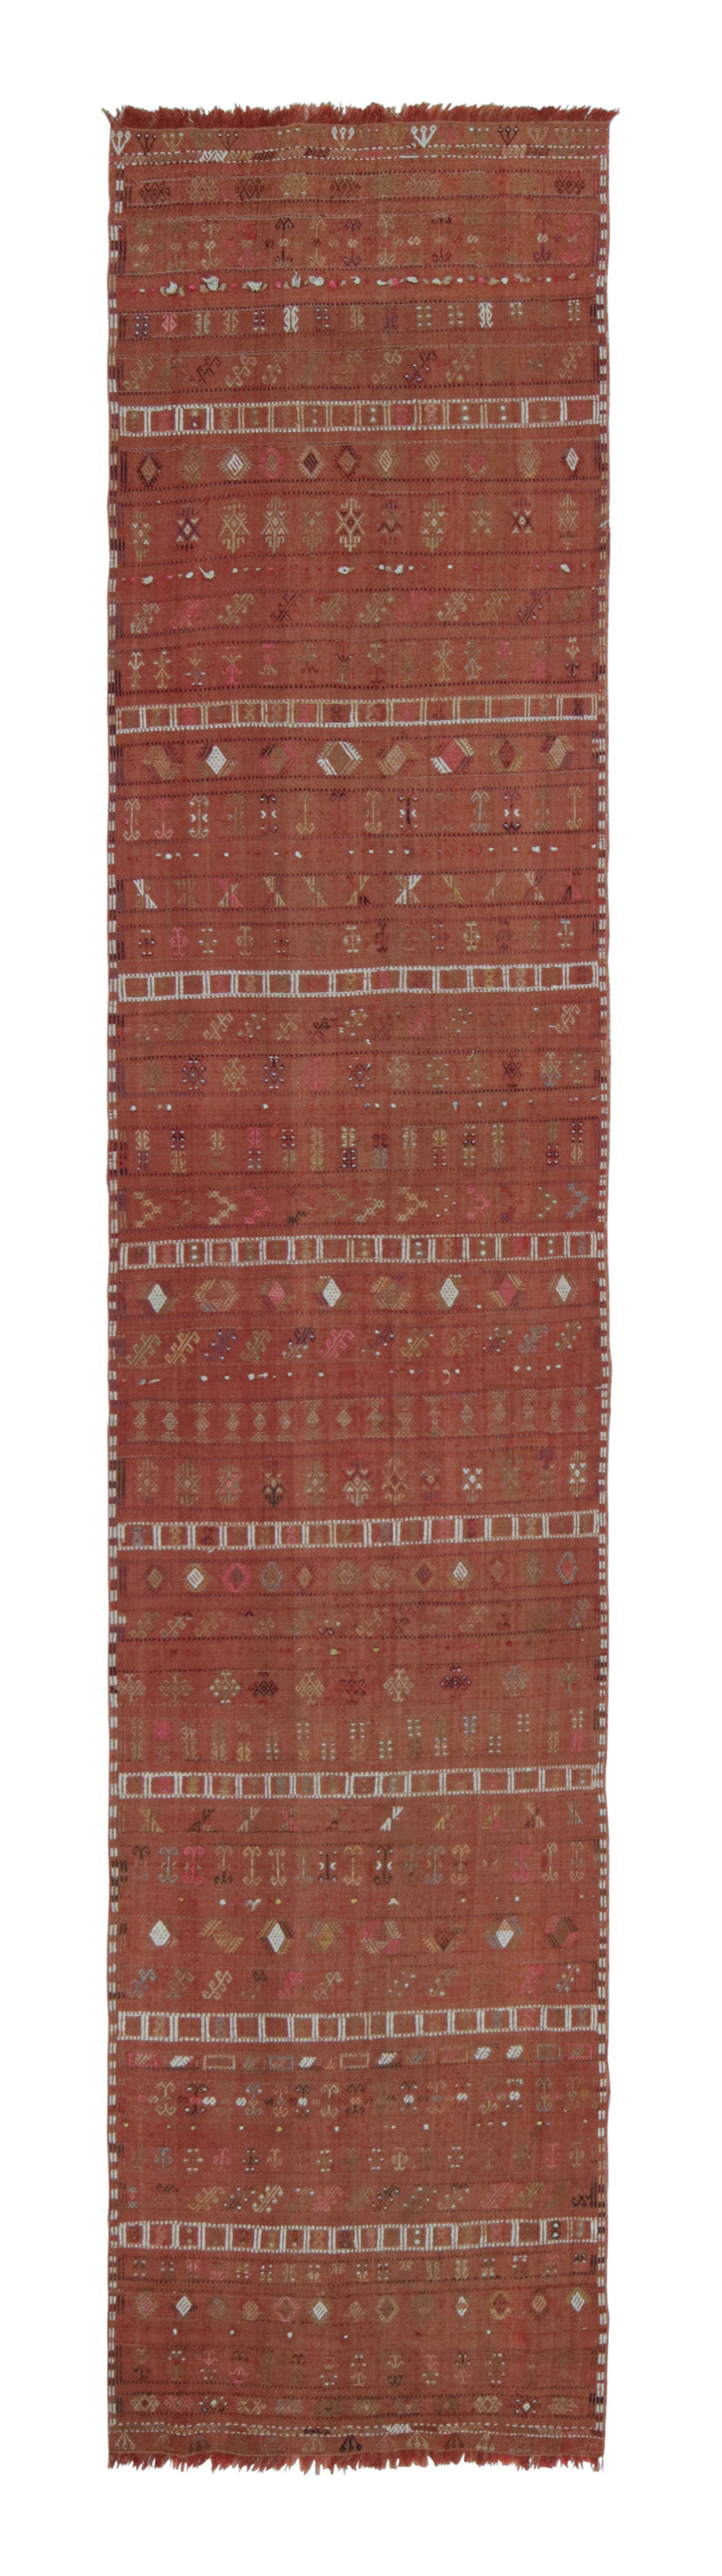 Vintage Sivas Vermillion Red and Beige-Brown Wool Kilim Runner by Rug & Kilim